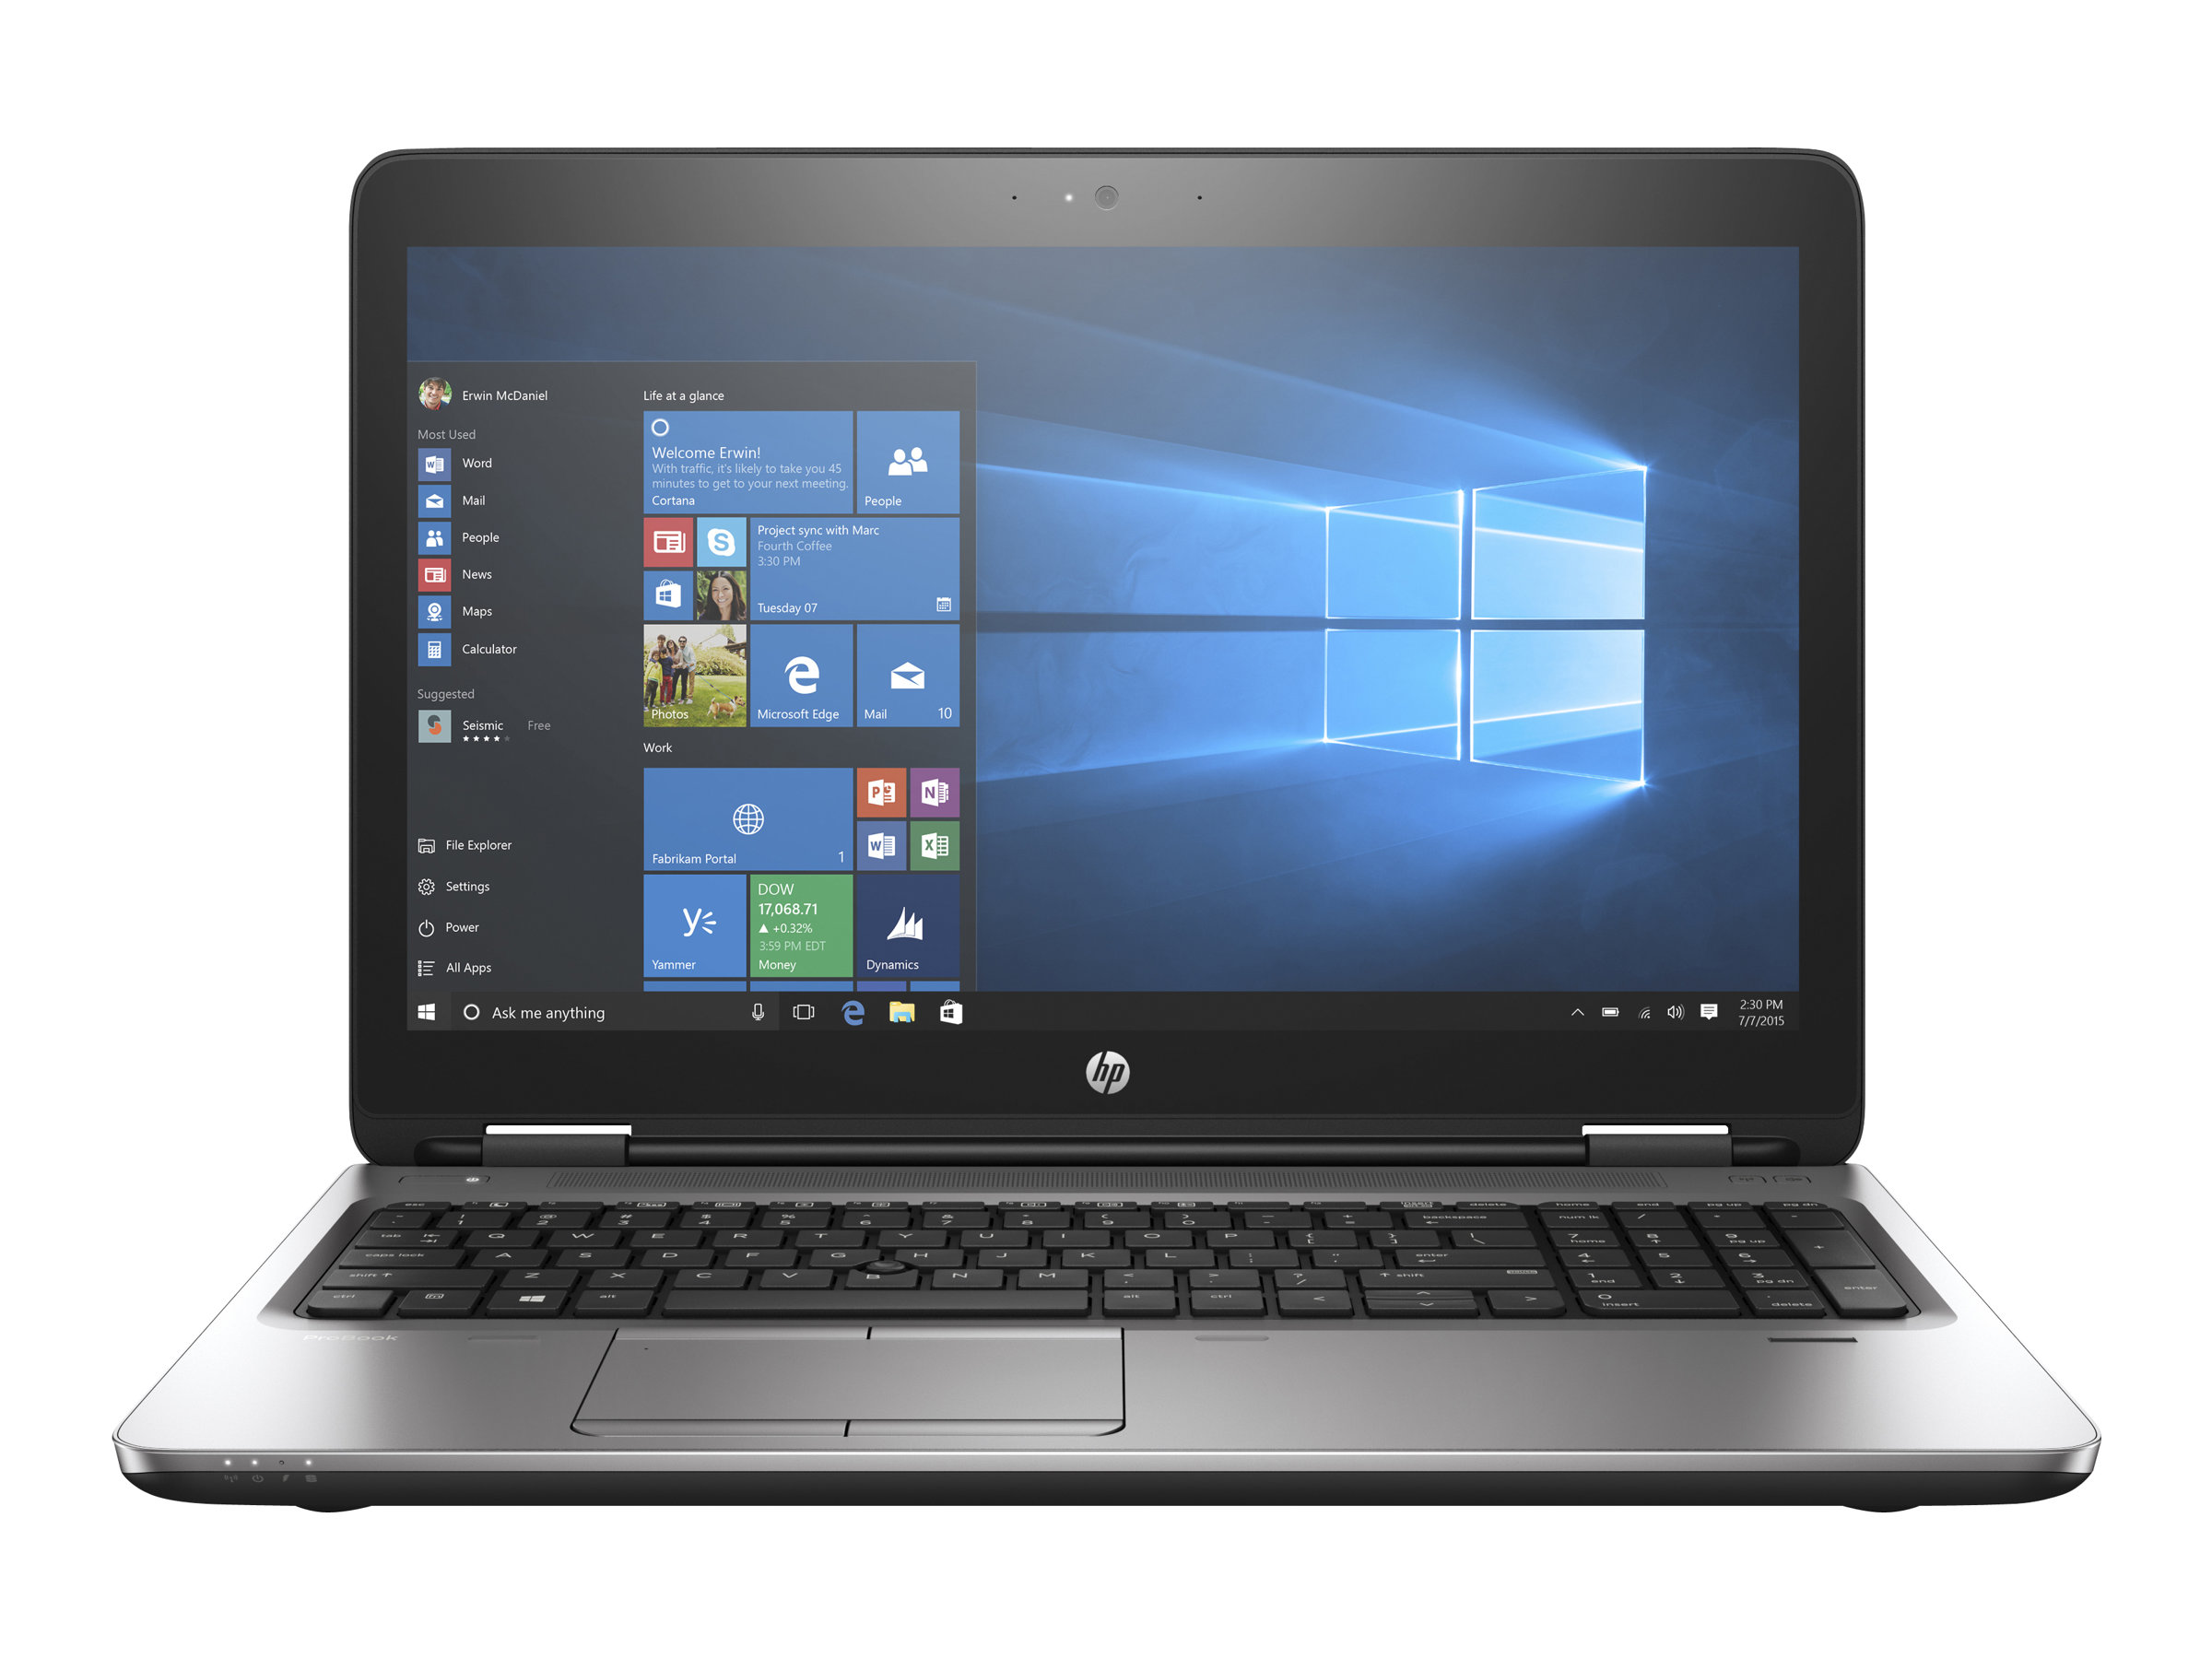 HP ProBook 650 G3 Notebook